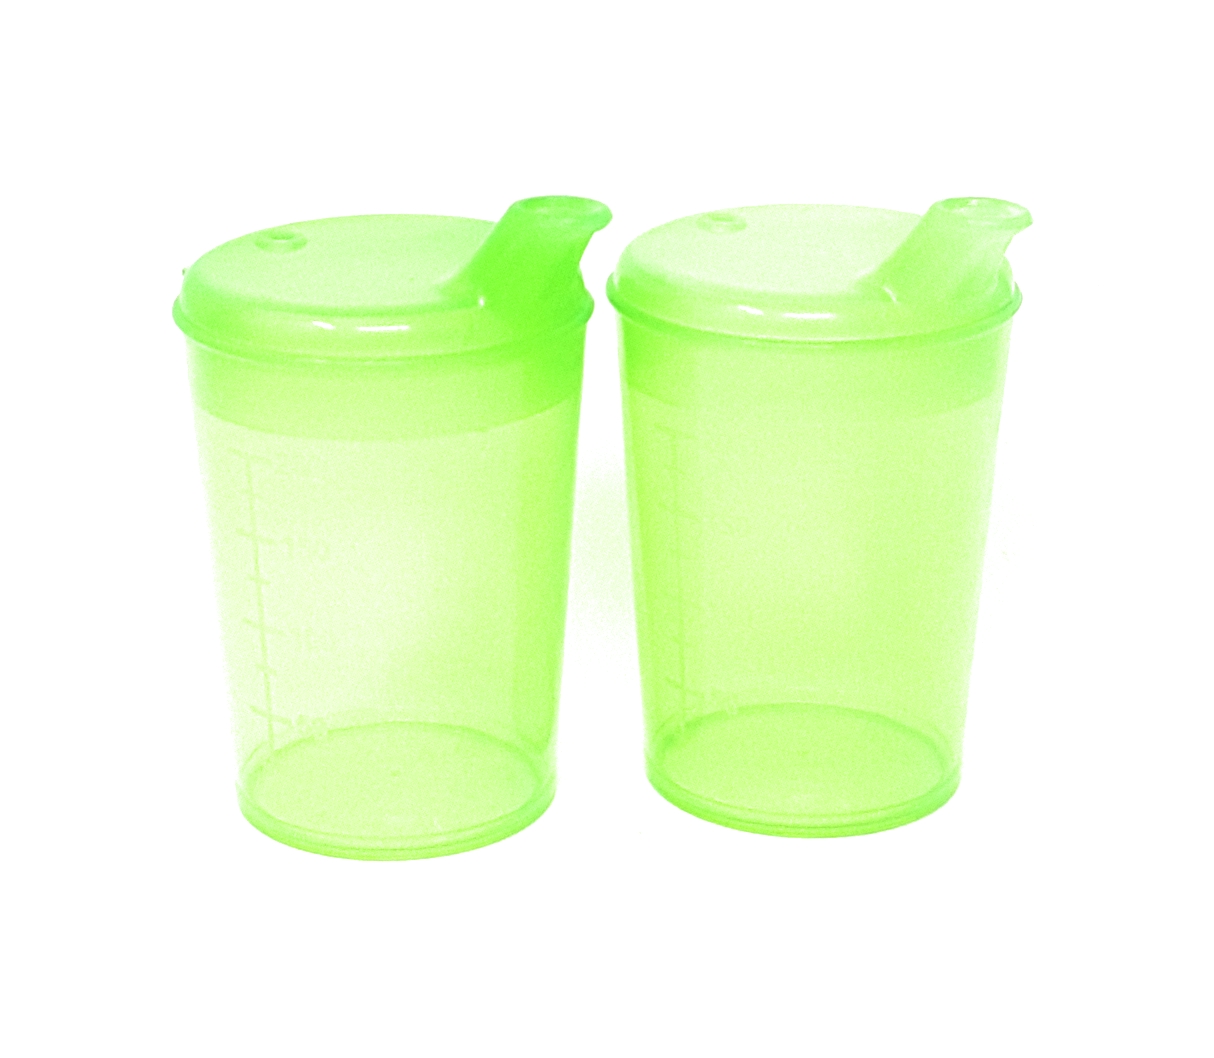 2 x Elderley / Adult Drinking Beaker Cups 250ml Wide 12mm x 10mm Spout Lids eBay